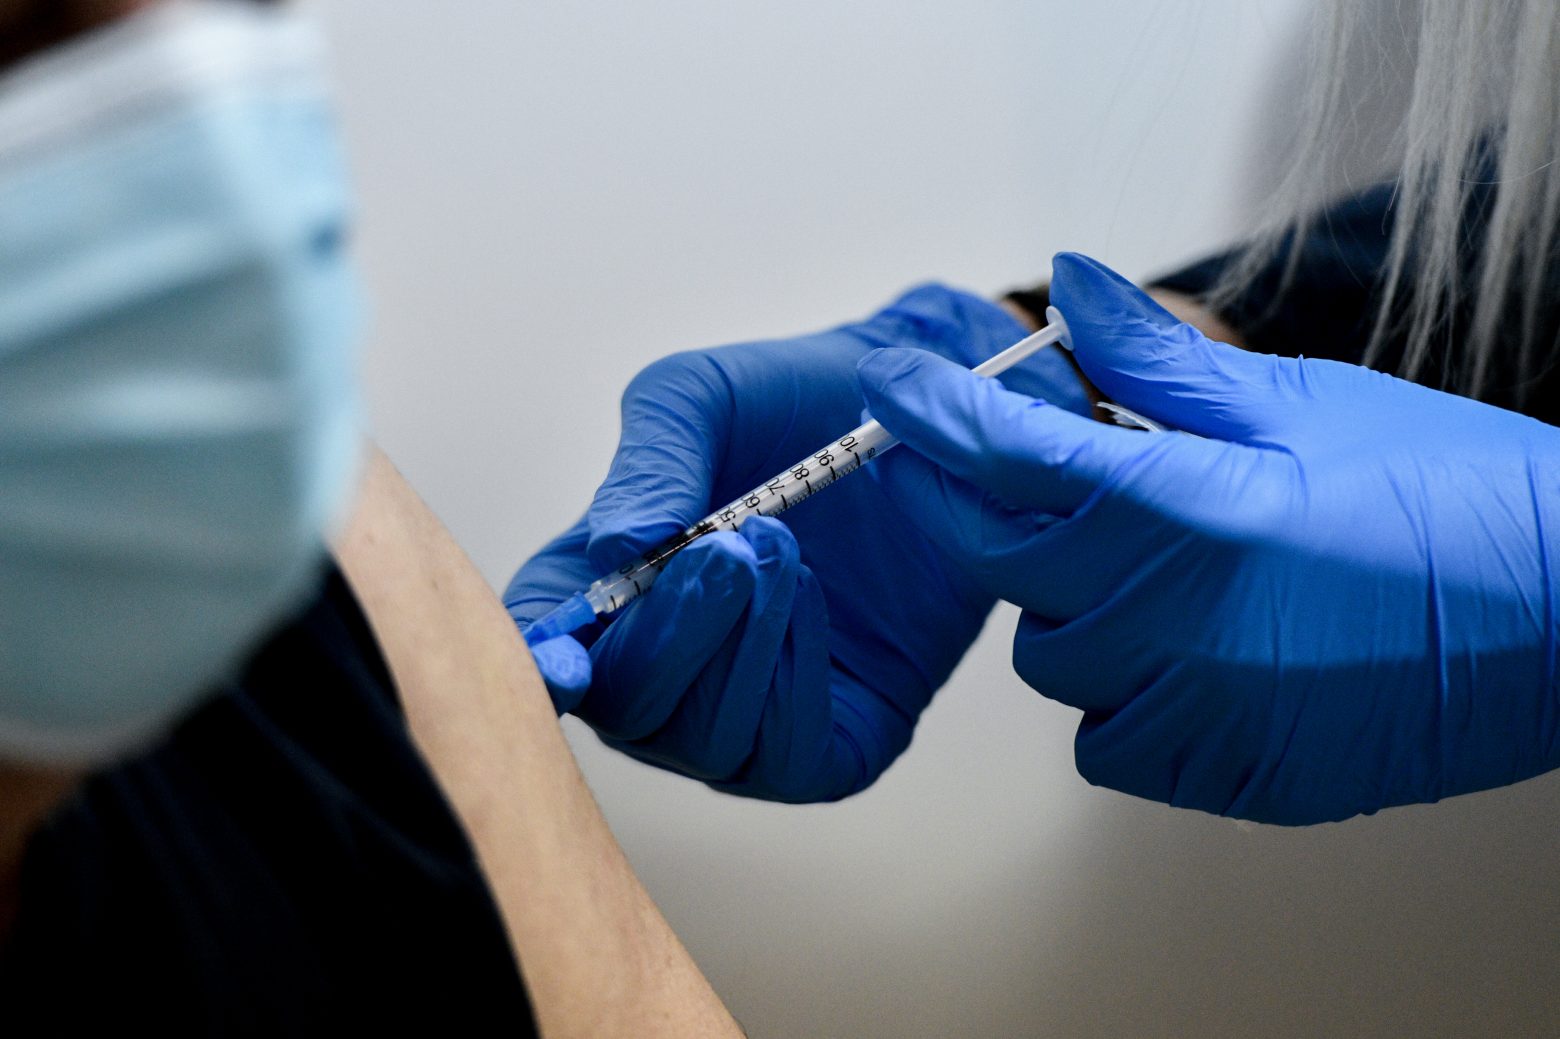 Κοροναϊός : Ποιες ομάδες εμβολιάζονται τον Απρίλιο - Ραντεβού «εξπρές» για 800.000 πολίτες με υποκείμενα νοσήματα